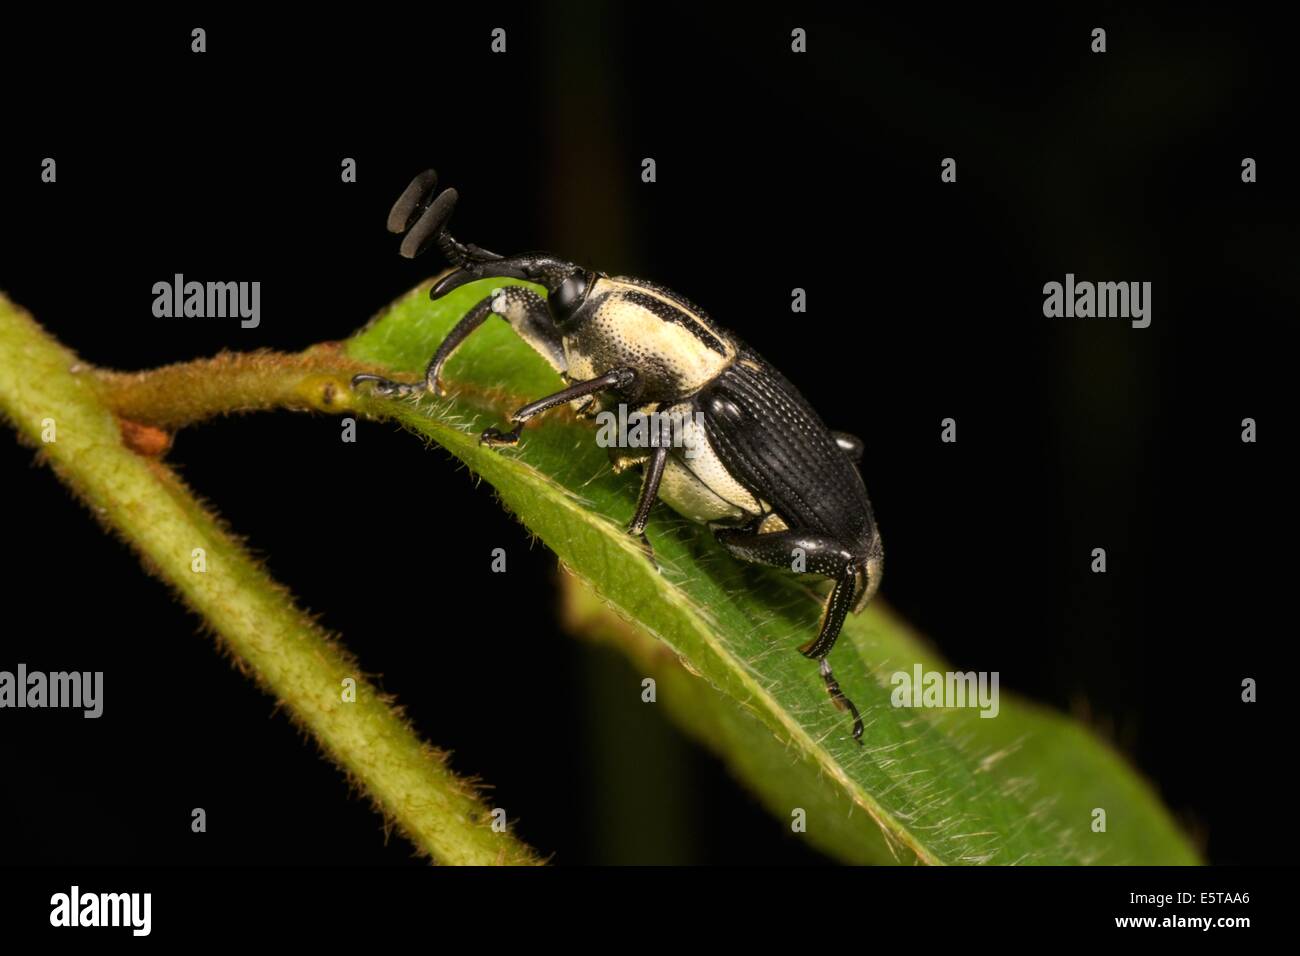 Ein Rüsselkäfer ist ein Käfer aus der Überfamilie Curculionoidea. Curculionidae ist die Familie der "echten" Rüsselkäfer Stockfoto